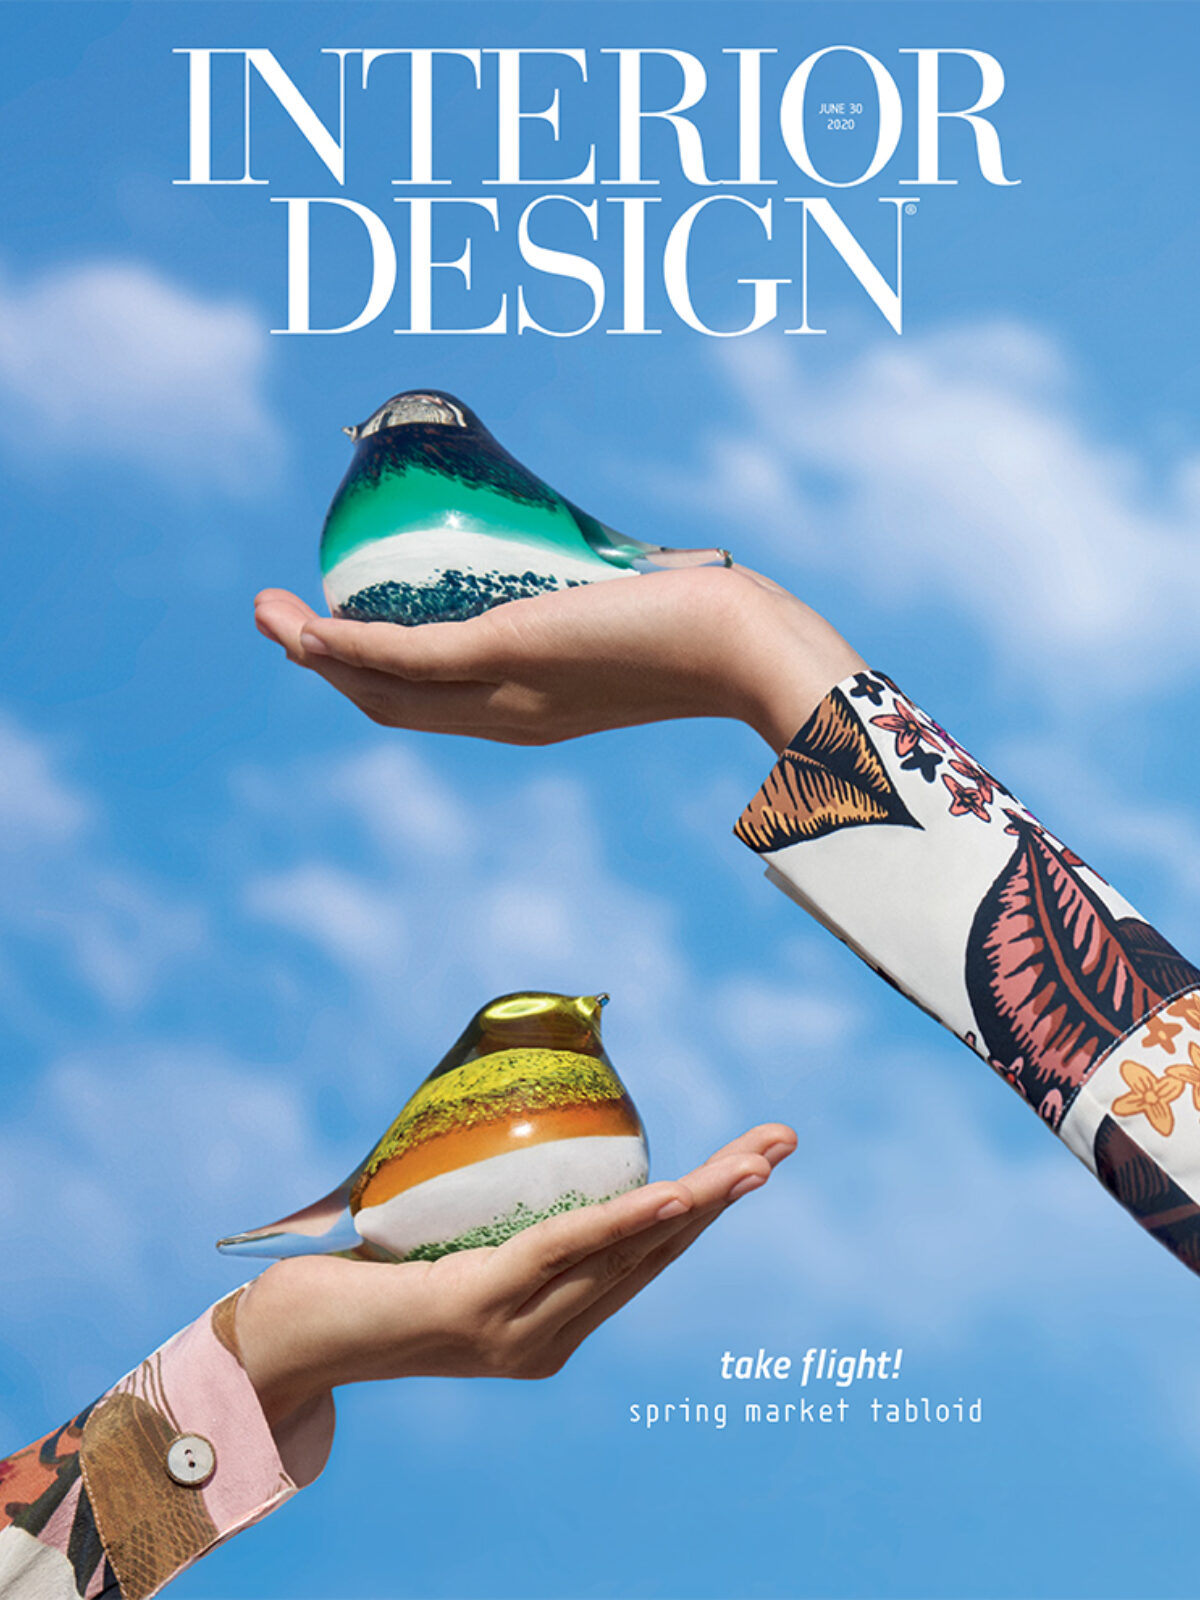 Interior Design Spring Market Tabloid cover 2020